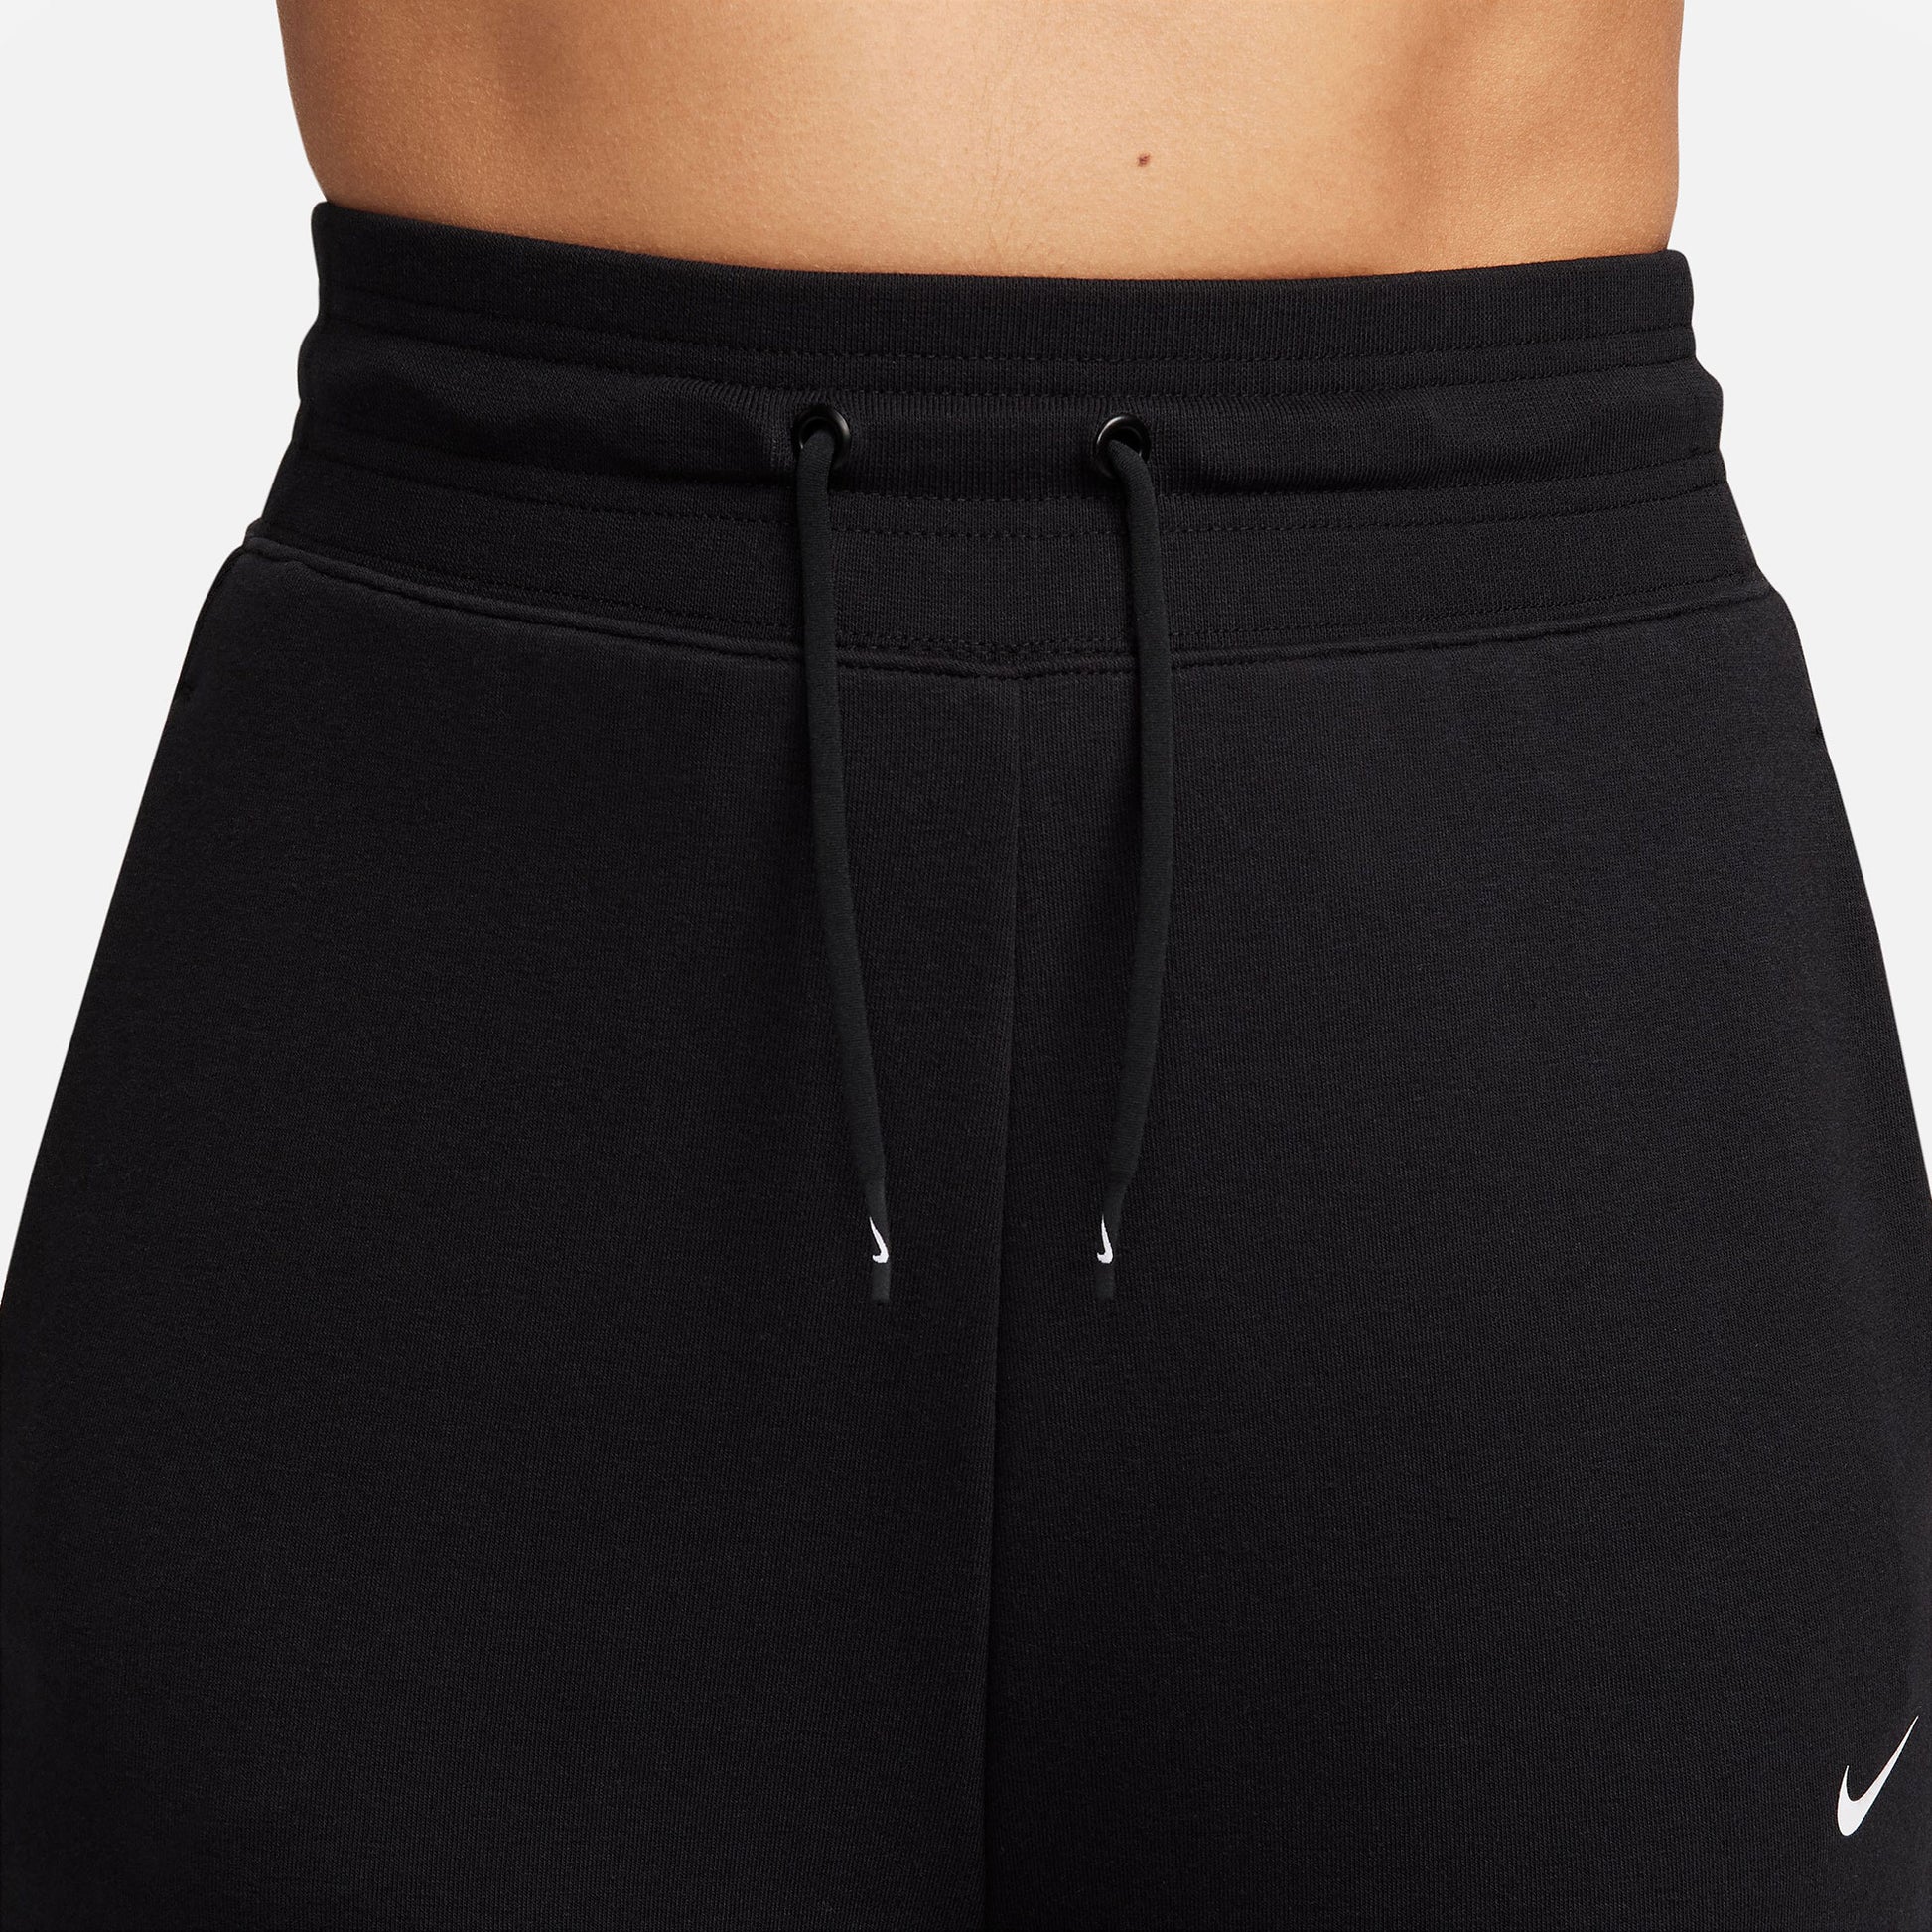 Nike One Dri-FIT Women's Jogger Pants Black (5)